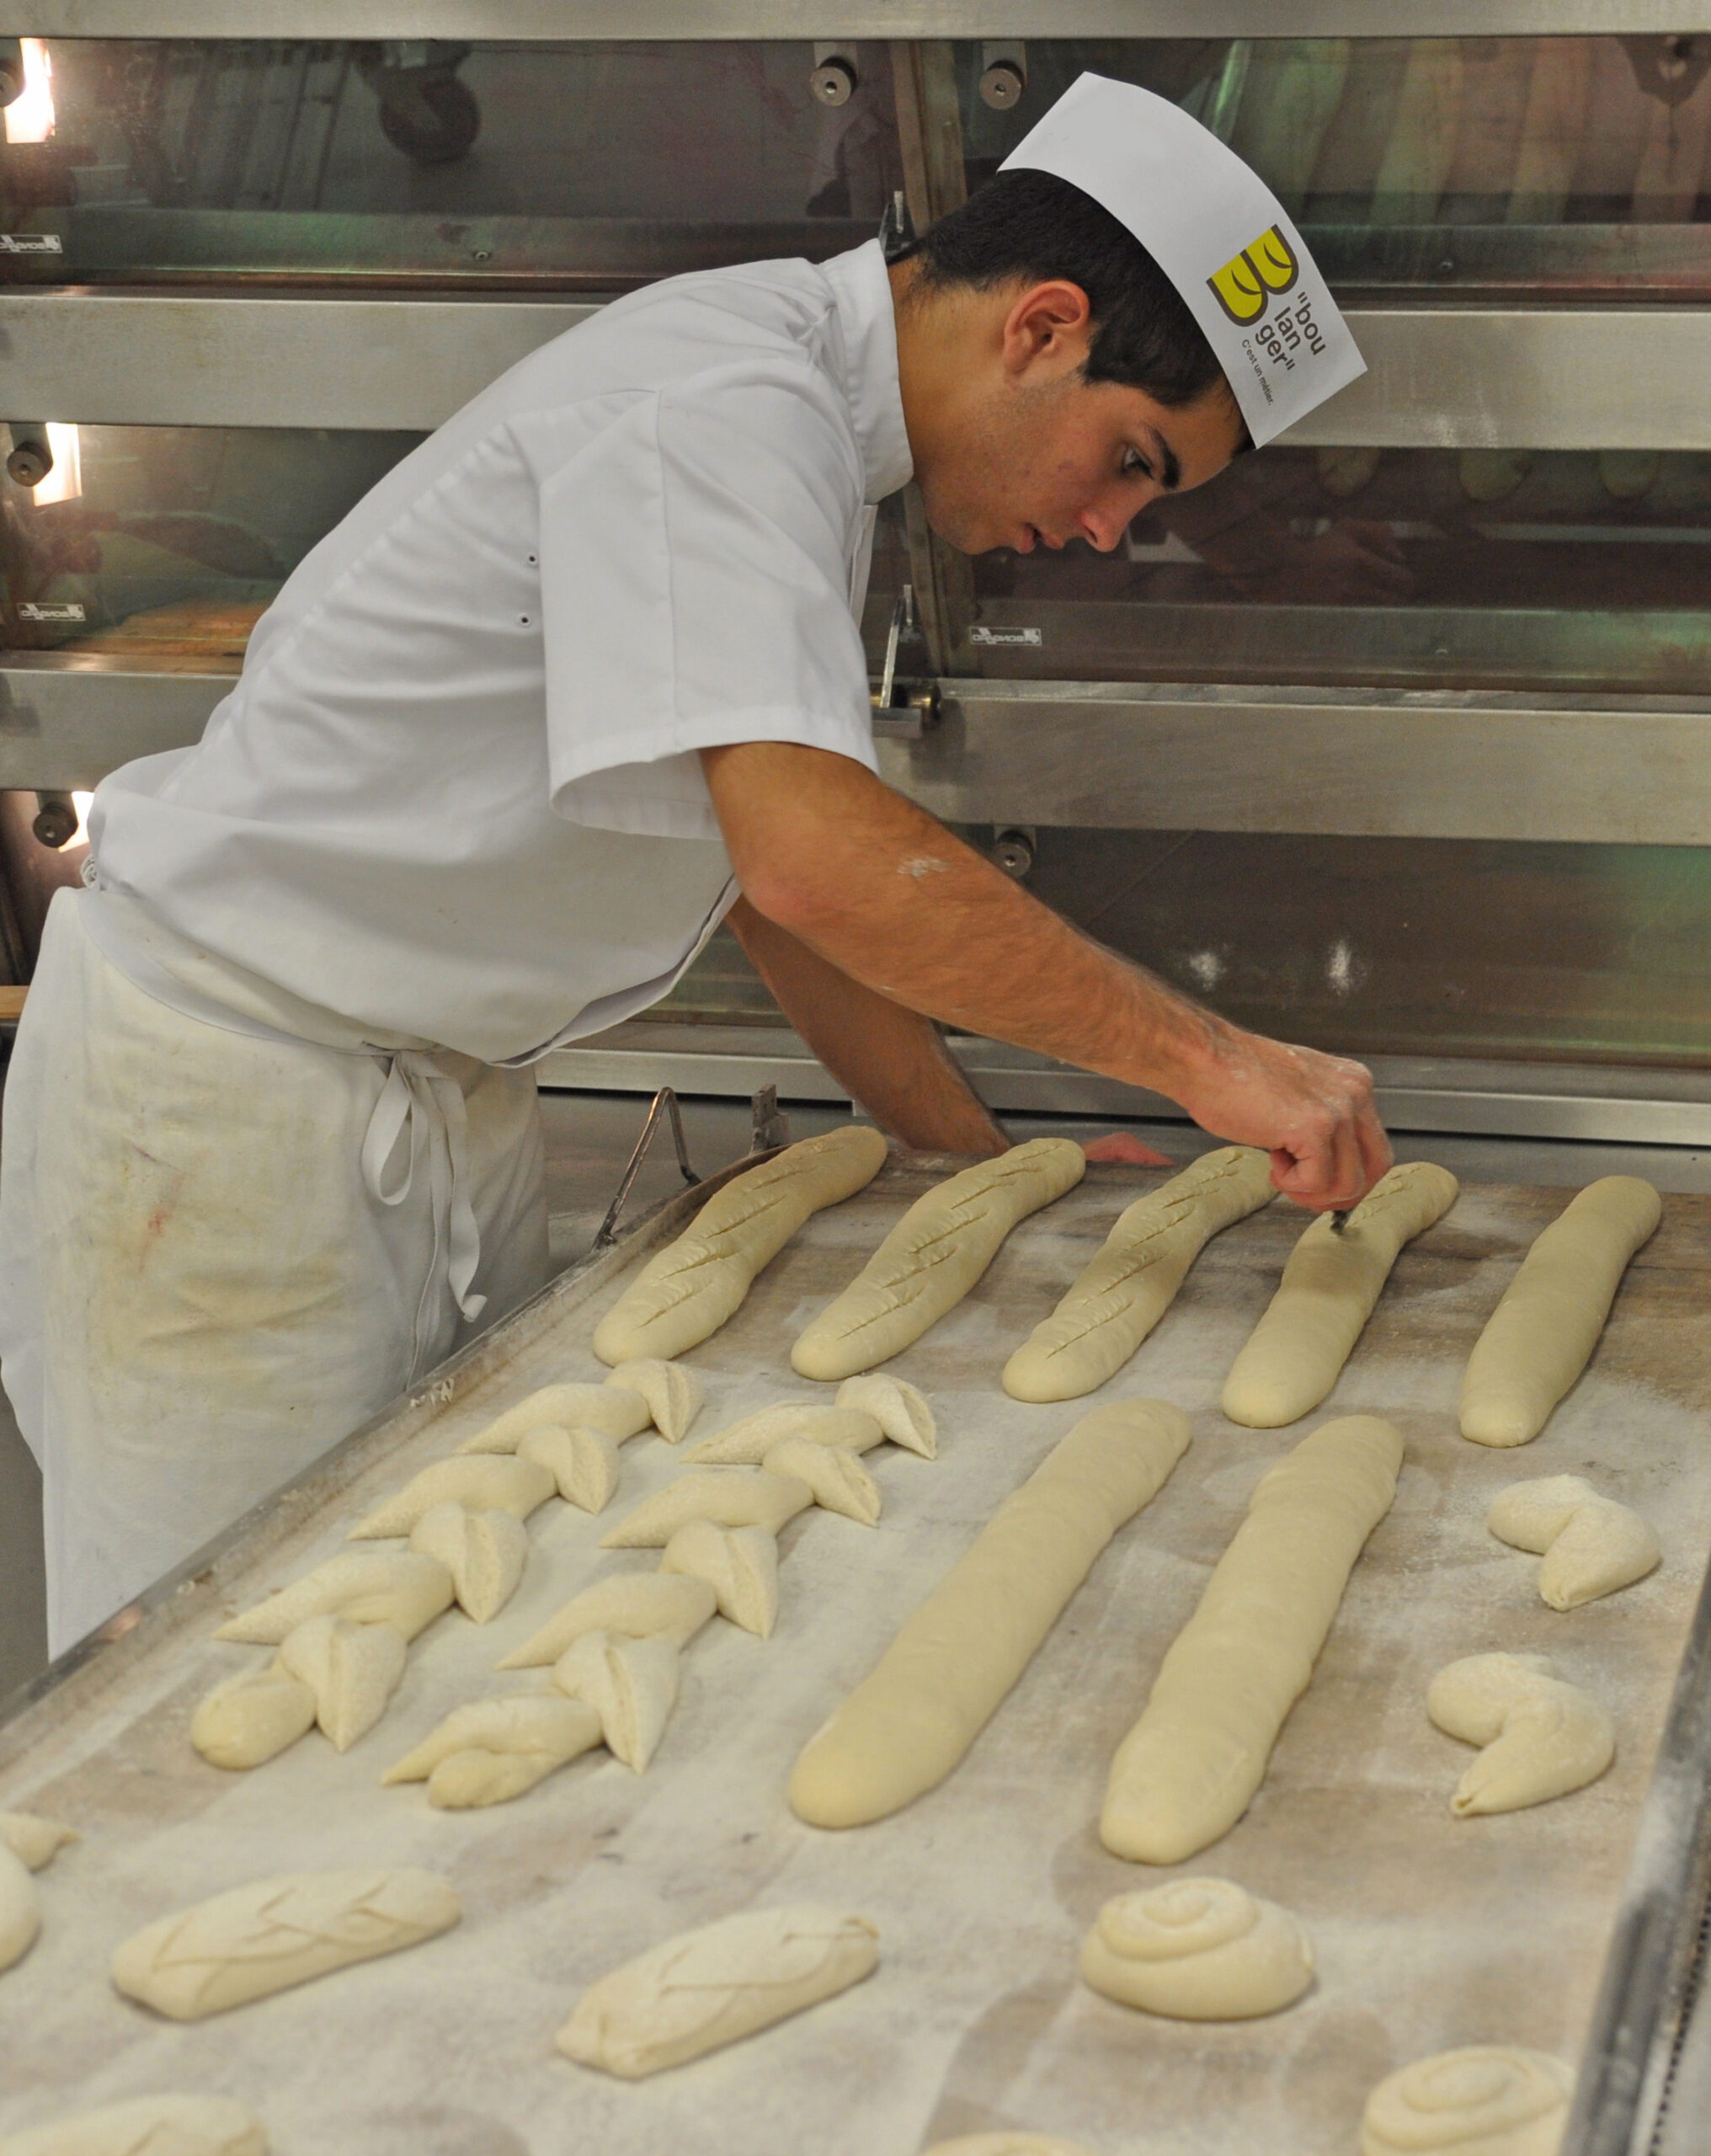 Tableau de bord. La formation et l’apprentissage aux métiers de Boulangerie-Pâtisserie